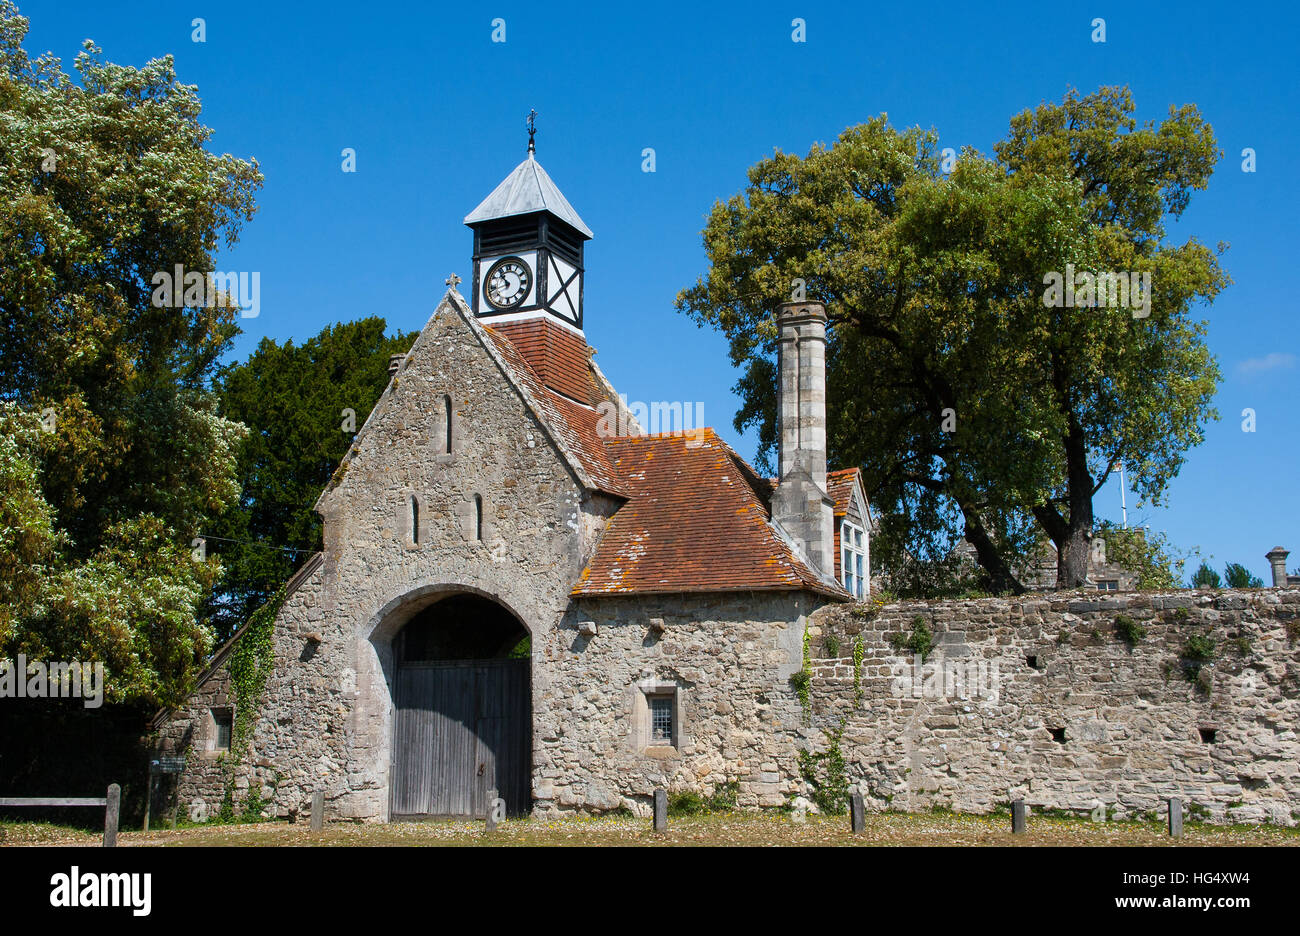 L'ancienne maison de gardien en pierre avec tour de l'horloge de style Tudor de l'Abbaye de Beaulieu dans la New Forest dans le Hampshire en Angleterre Banque D'Images